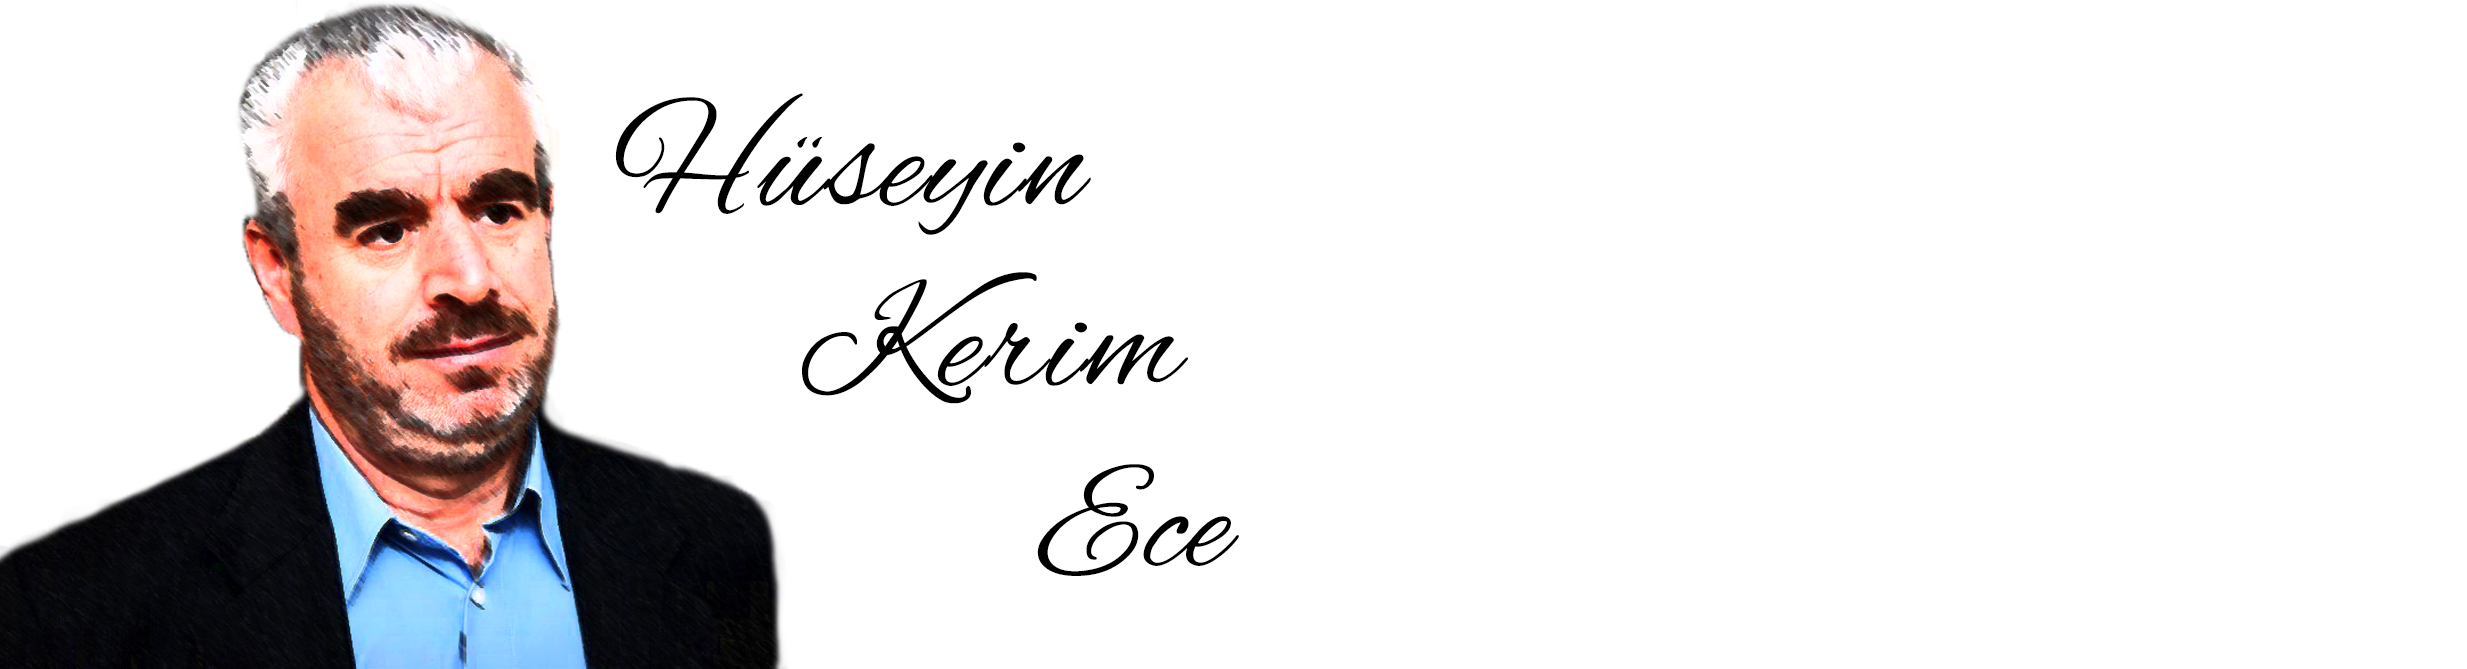 Huseyin Kerim Ece